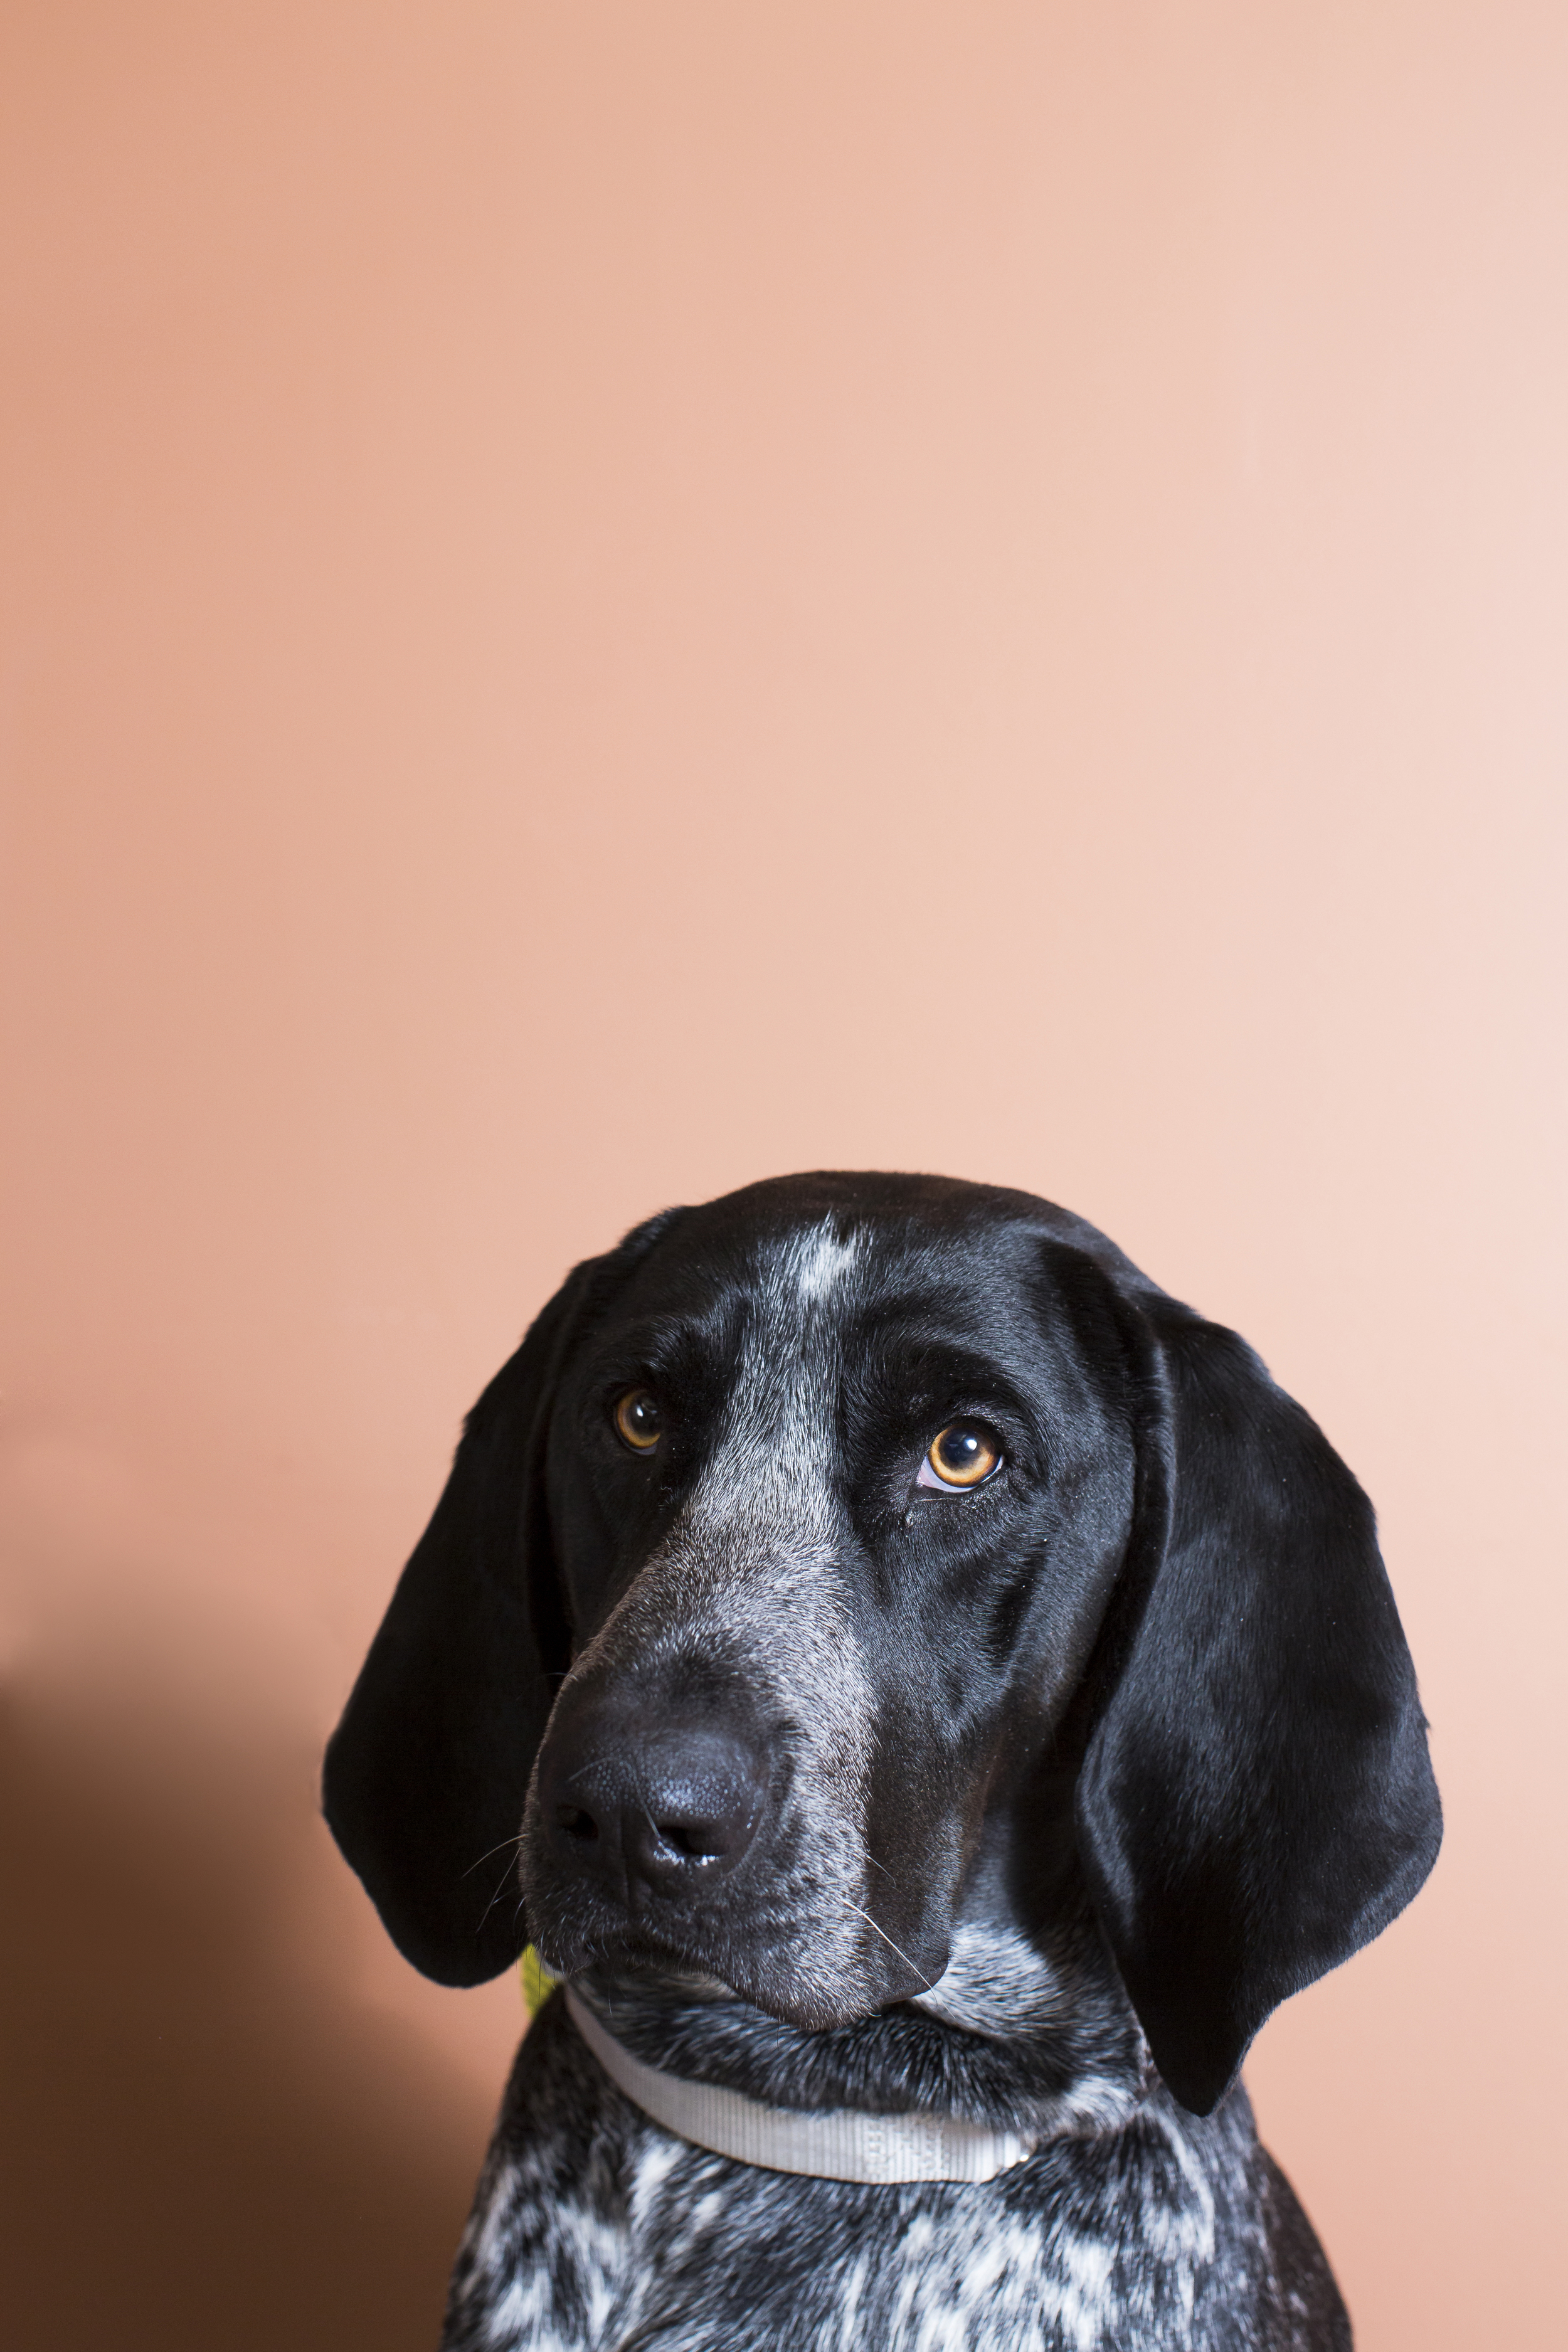 46 Mixed breed dog studio pet photography session warm orange background.jpg